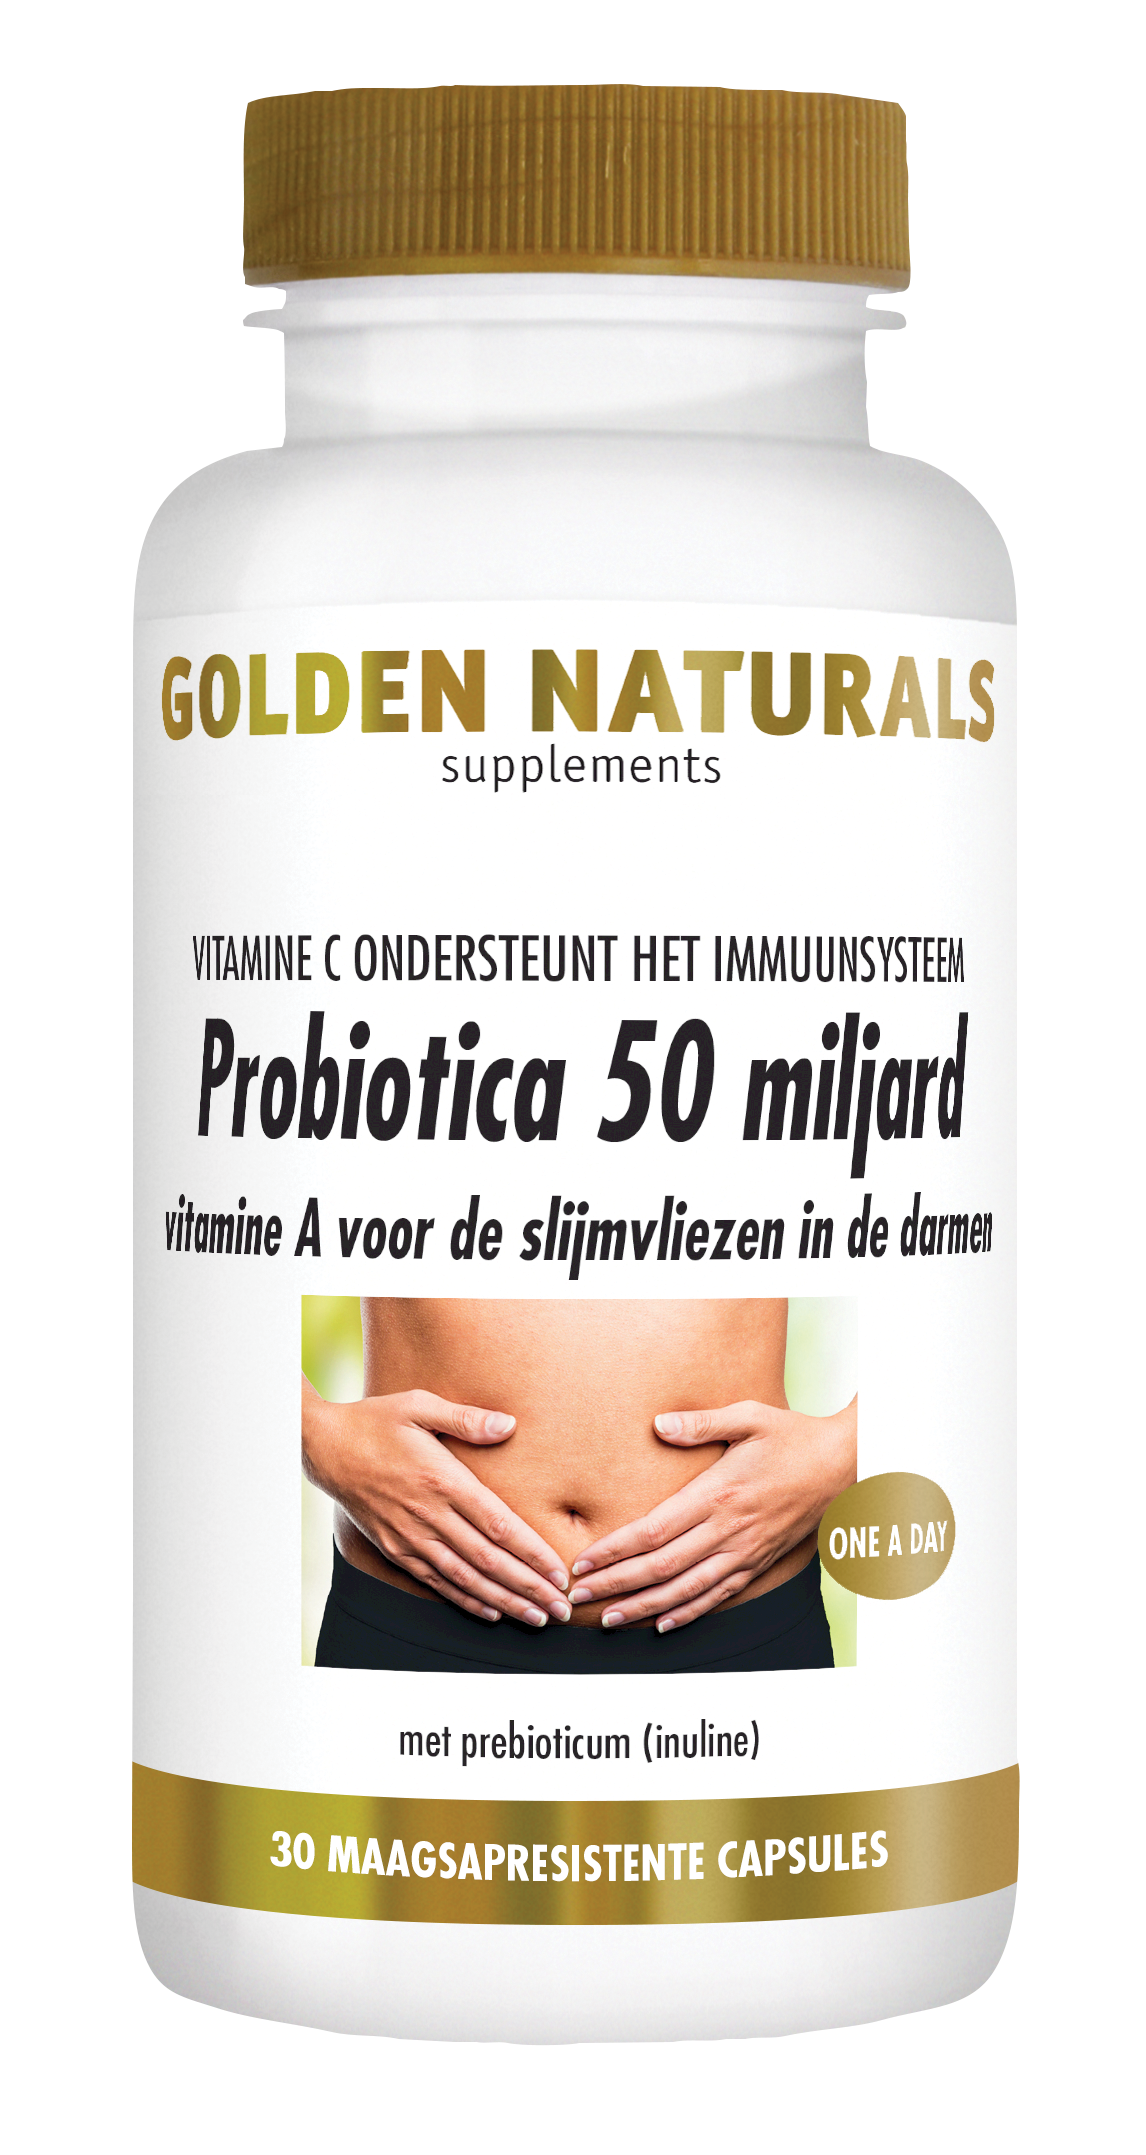 Golden Naturals Probiotica 50 miljard (30 veganistische maagsapresiste